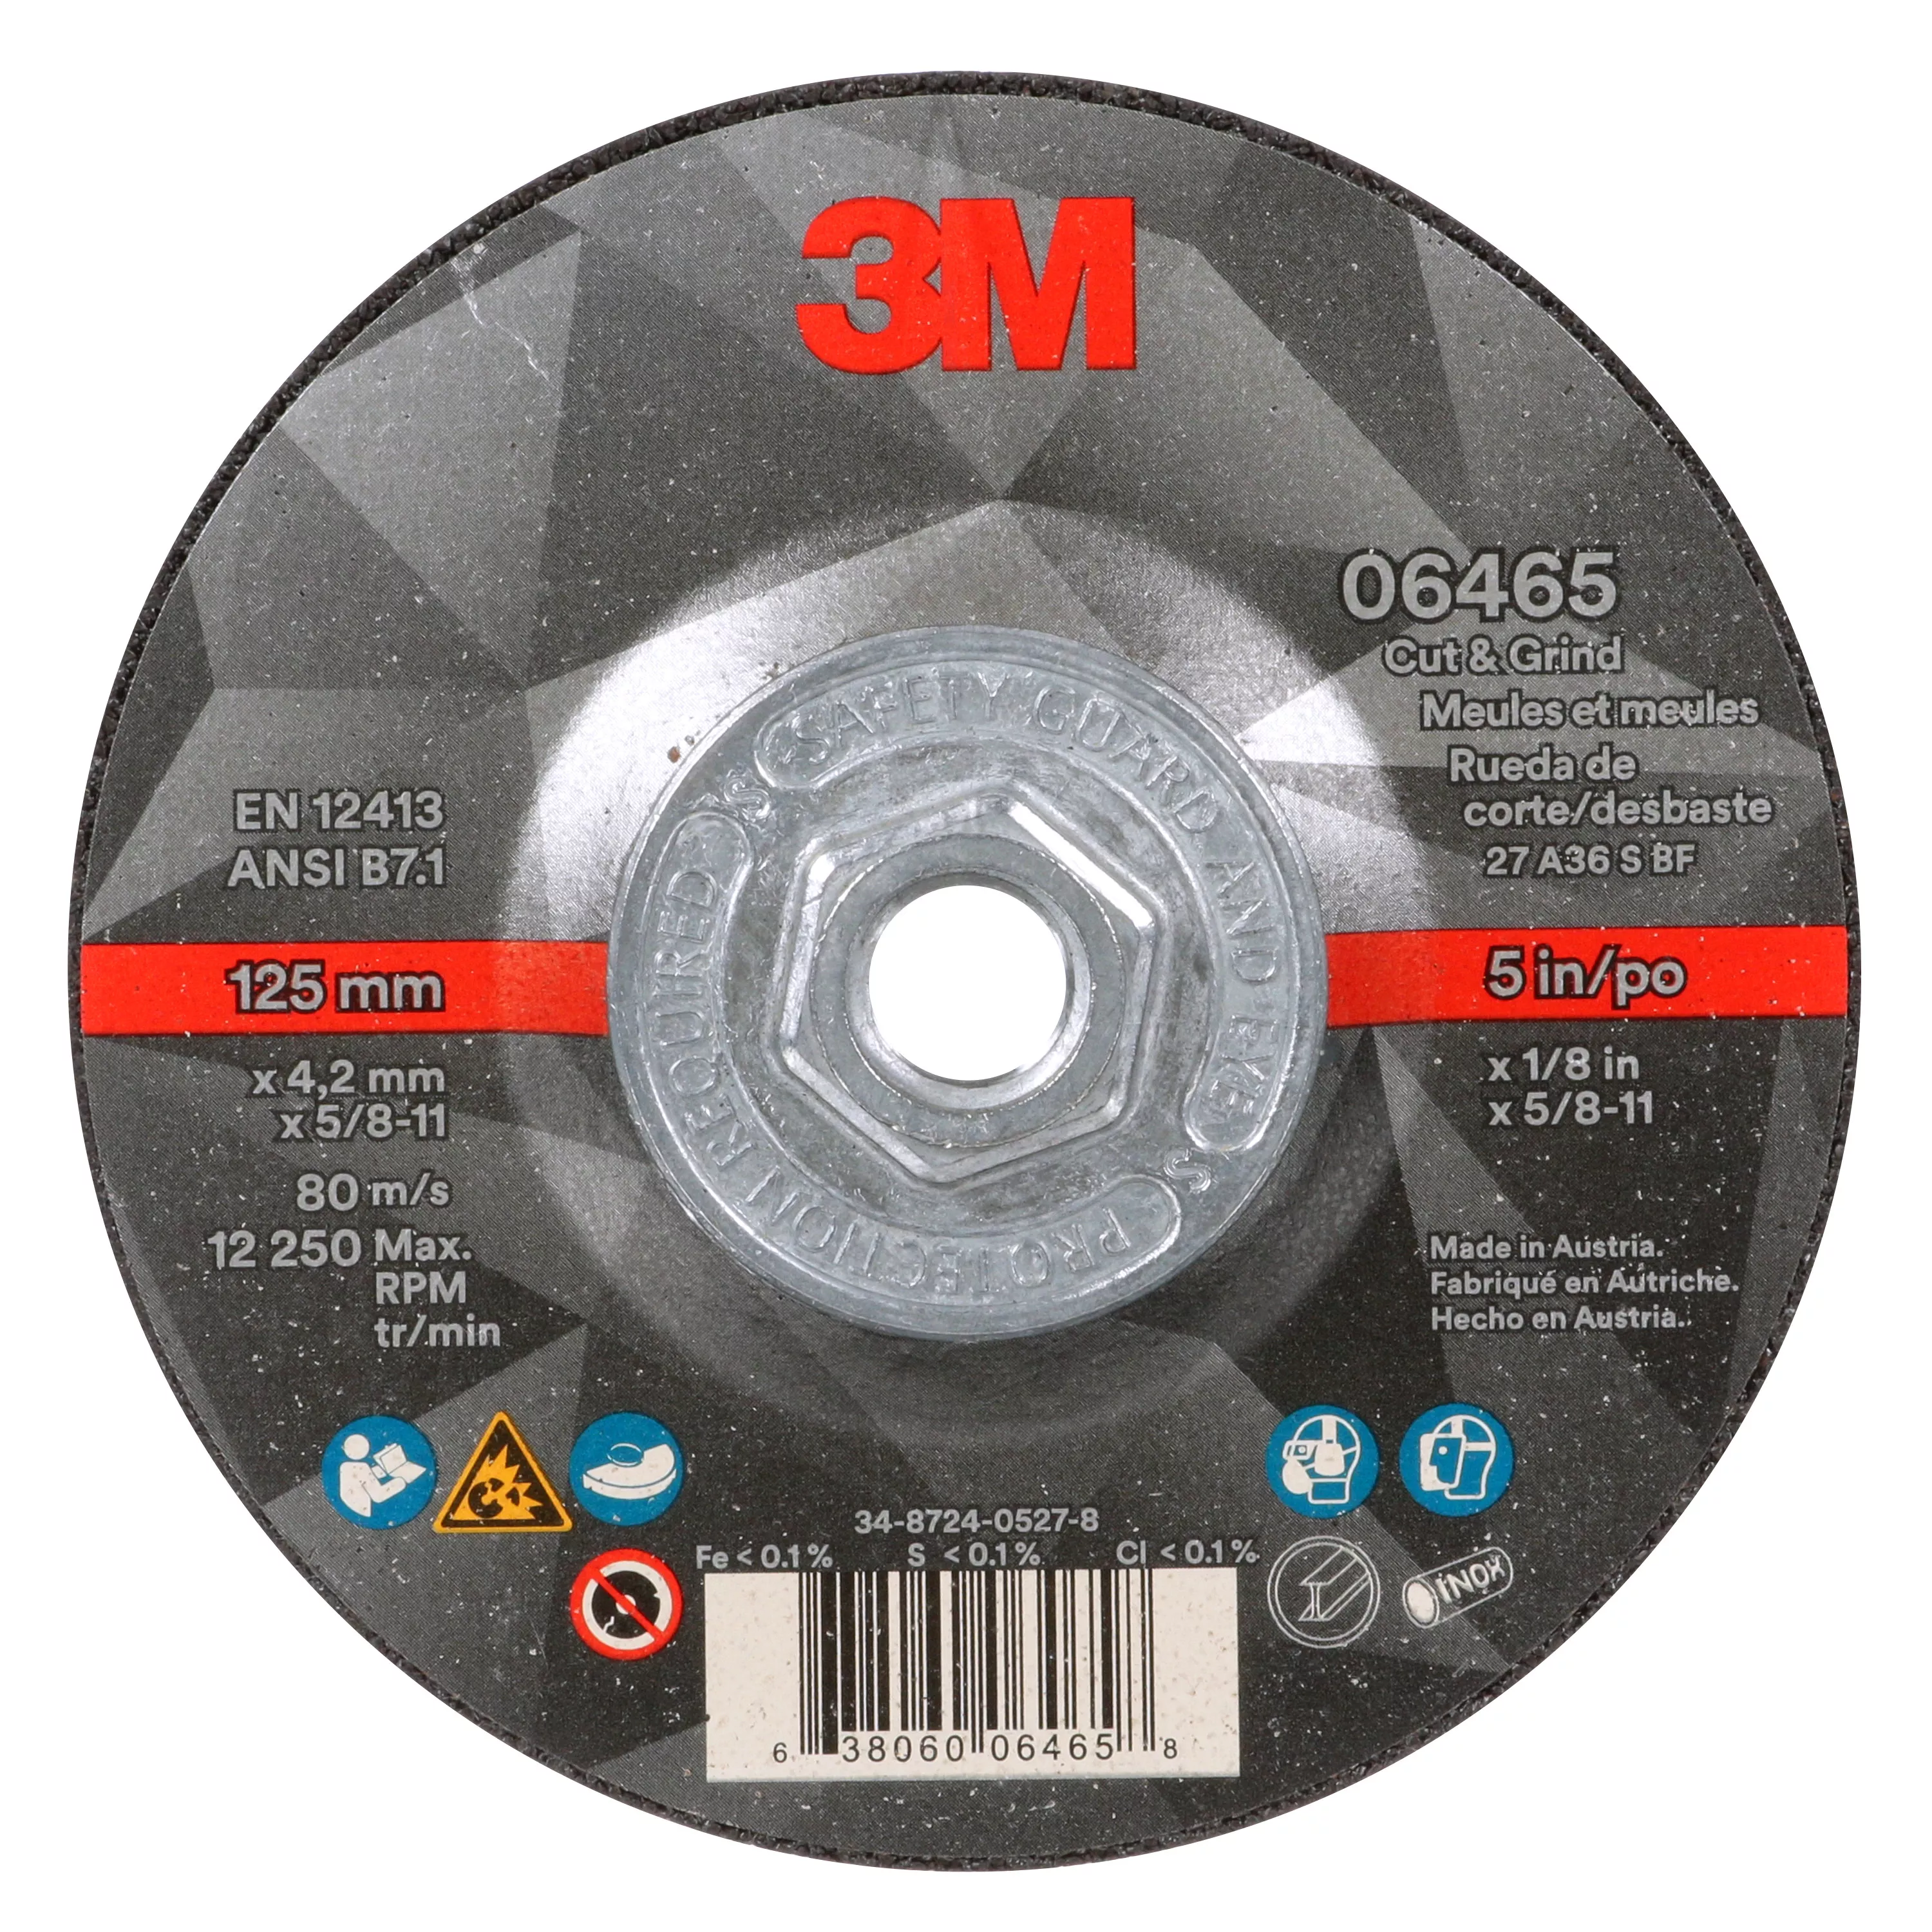 SKU 7100245015 | 3M™ Cut & Grind Wheel